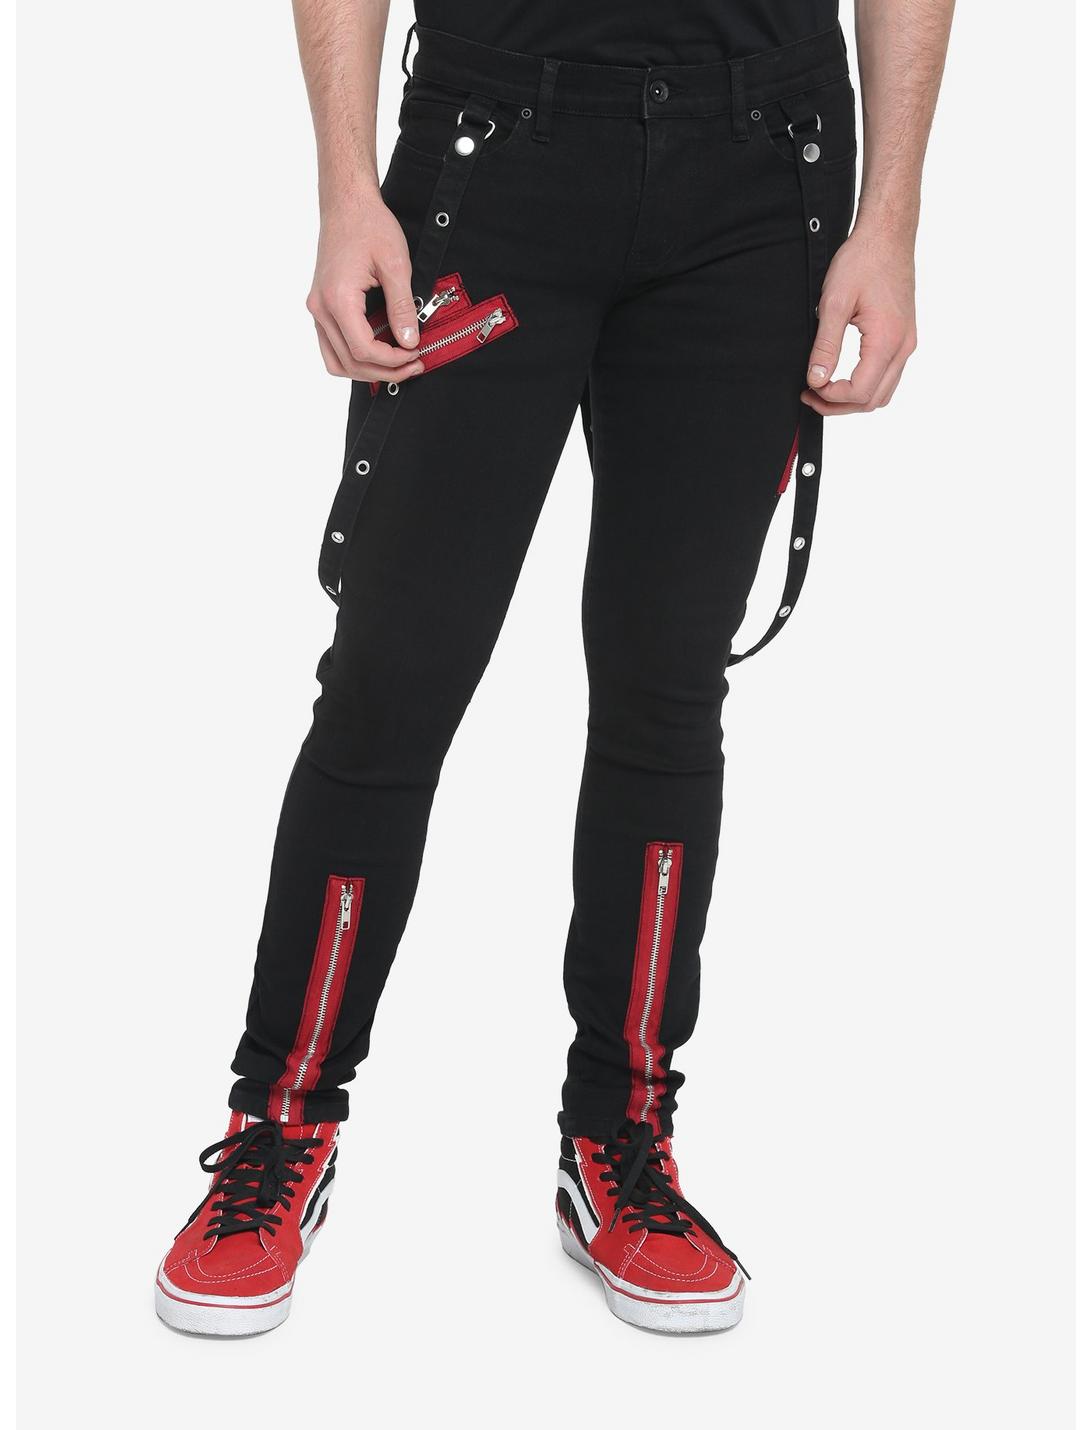 HT Denim Red Zipper Stinger Jeans With Grommet Suspenders, BLACK  RED, hi-res